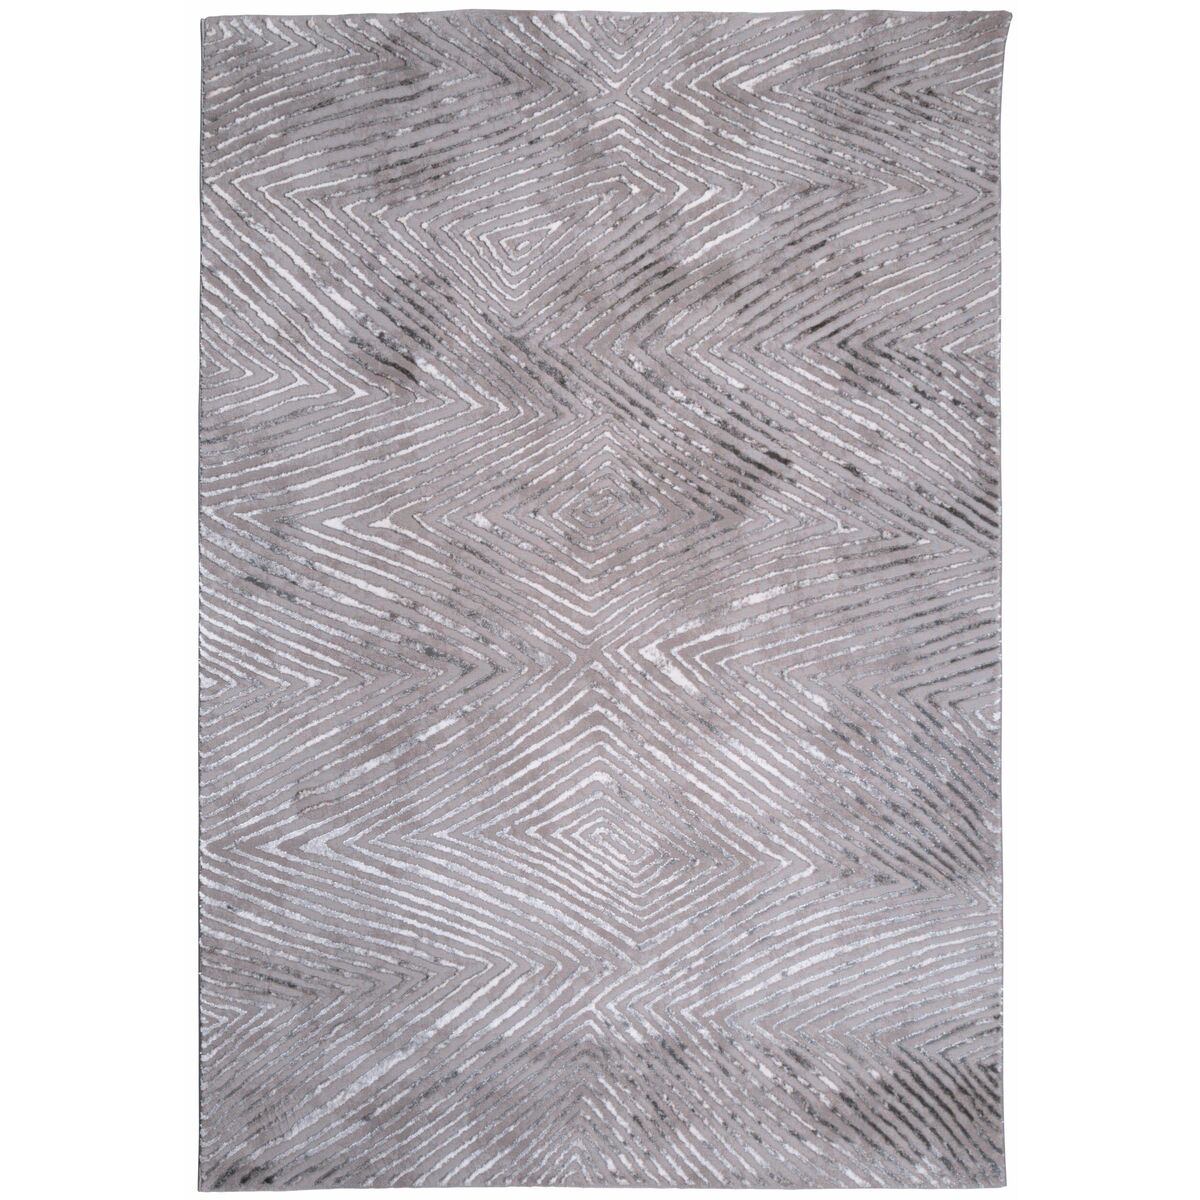 Dywan Flash geometryczny szaro-srebrny 160 x 230 cm